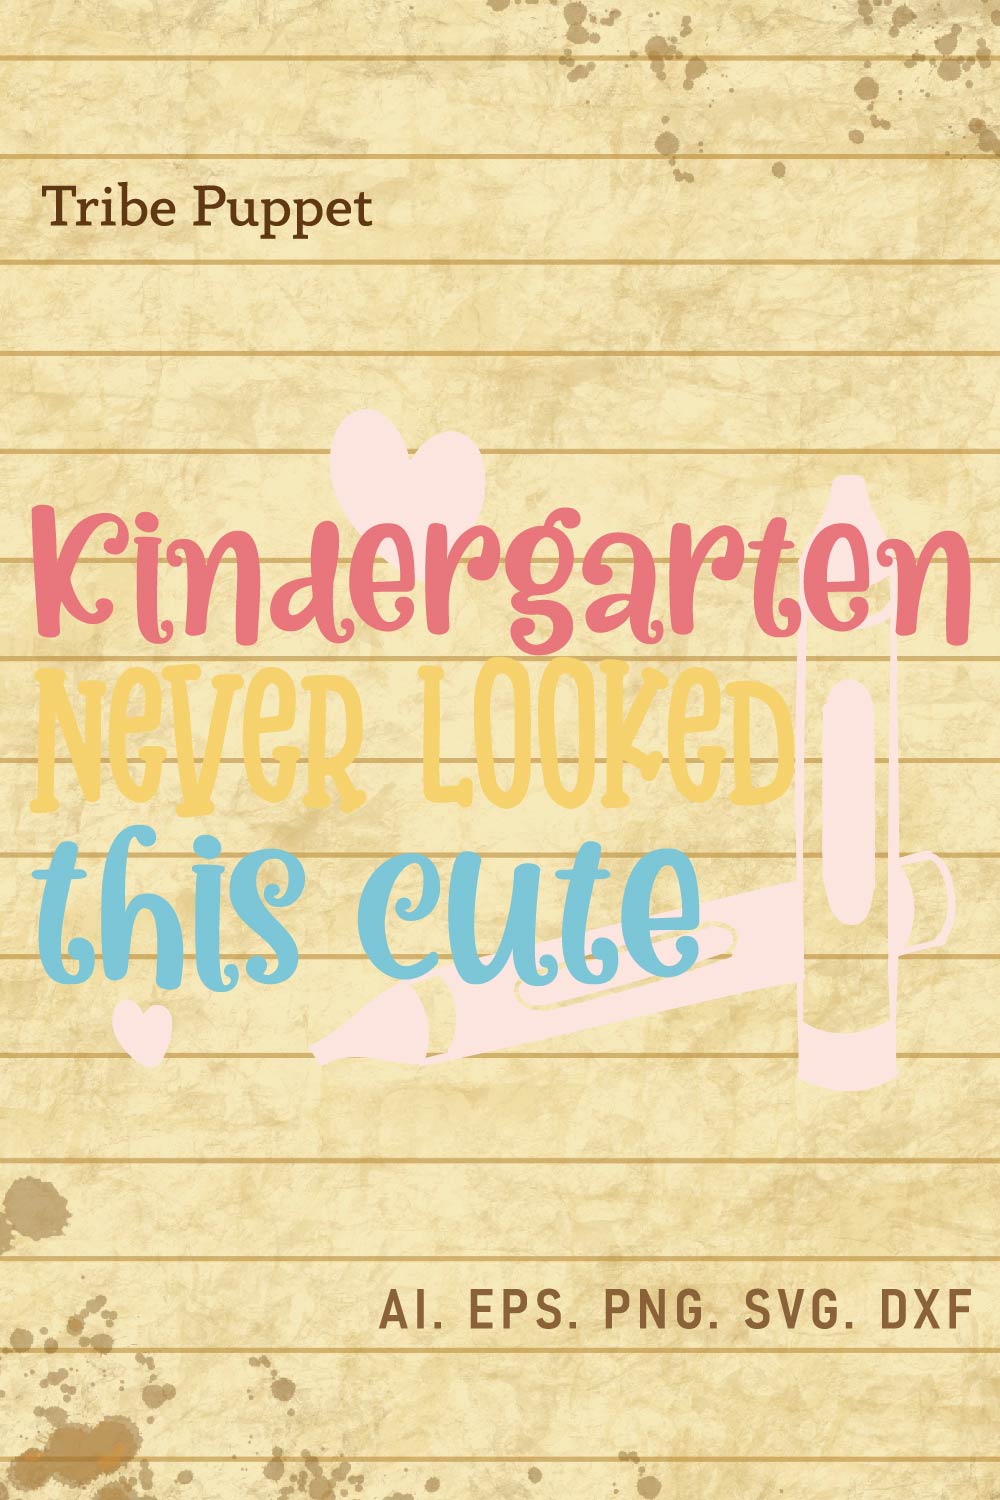 Kindergarten quotes pinterest preview image.